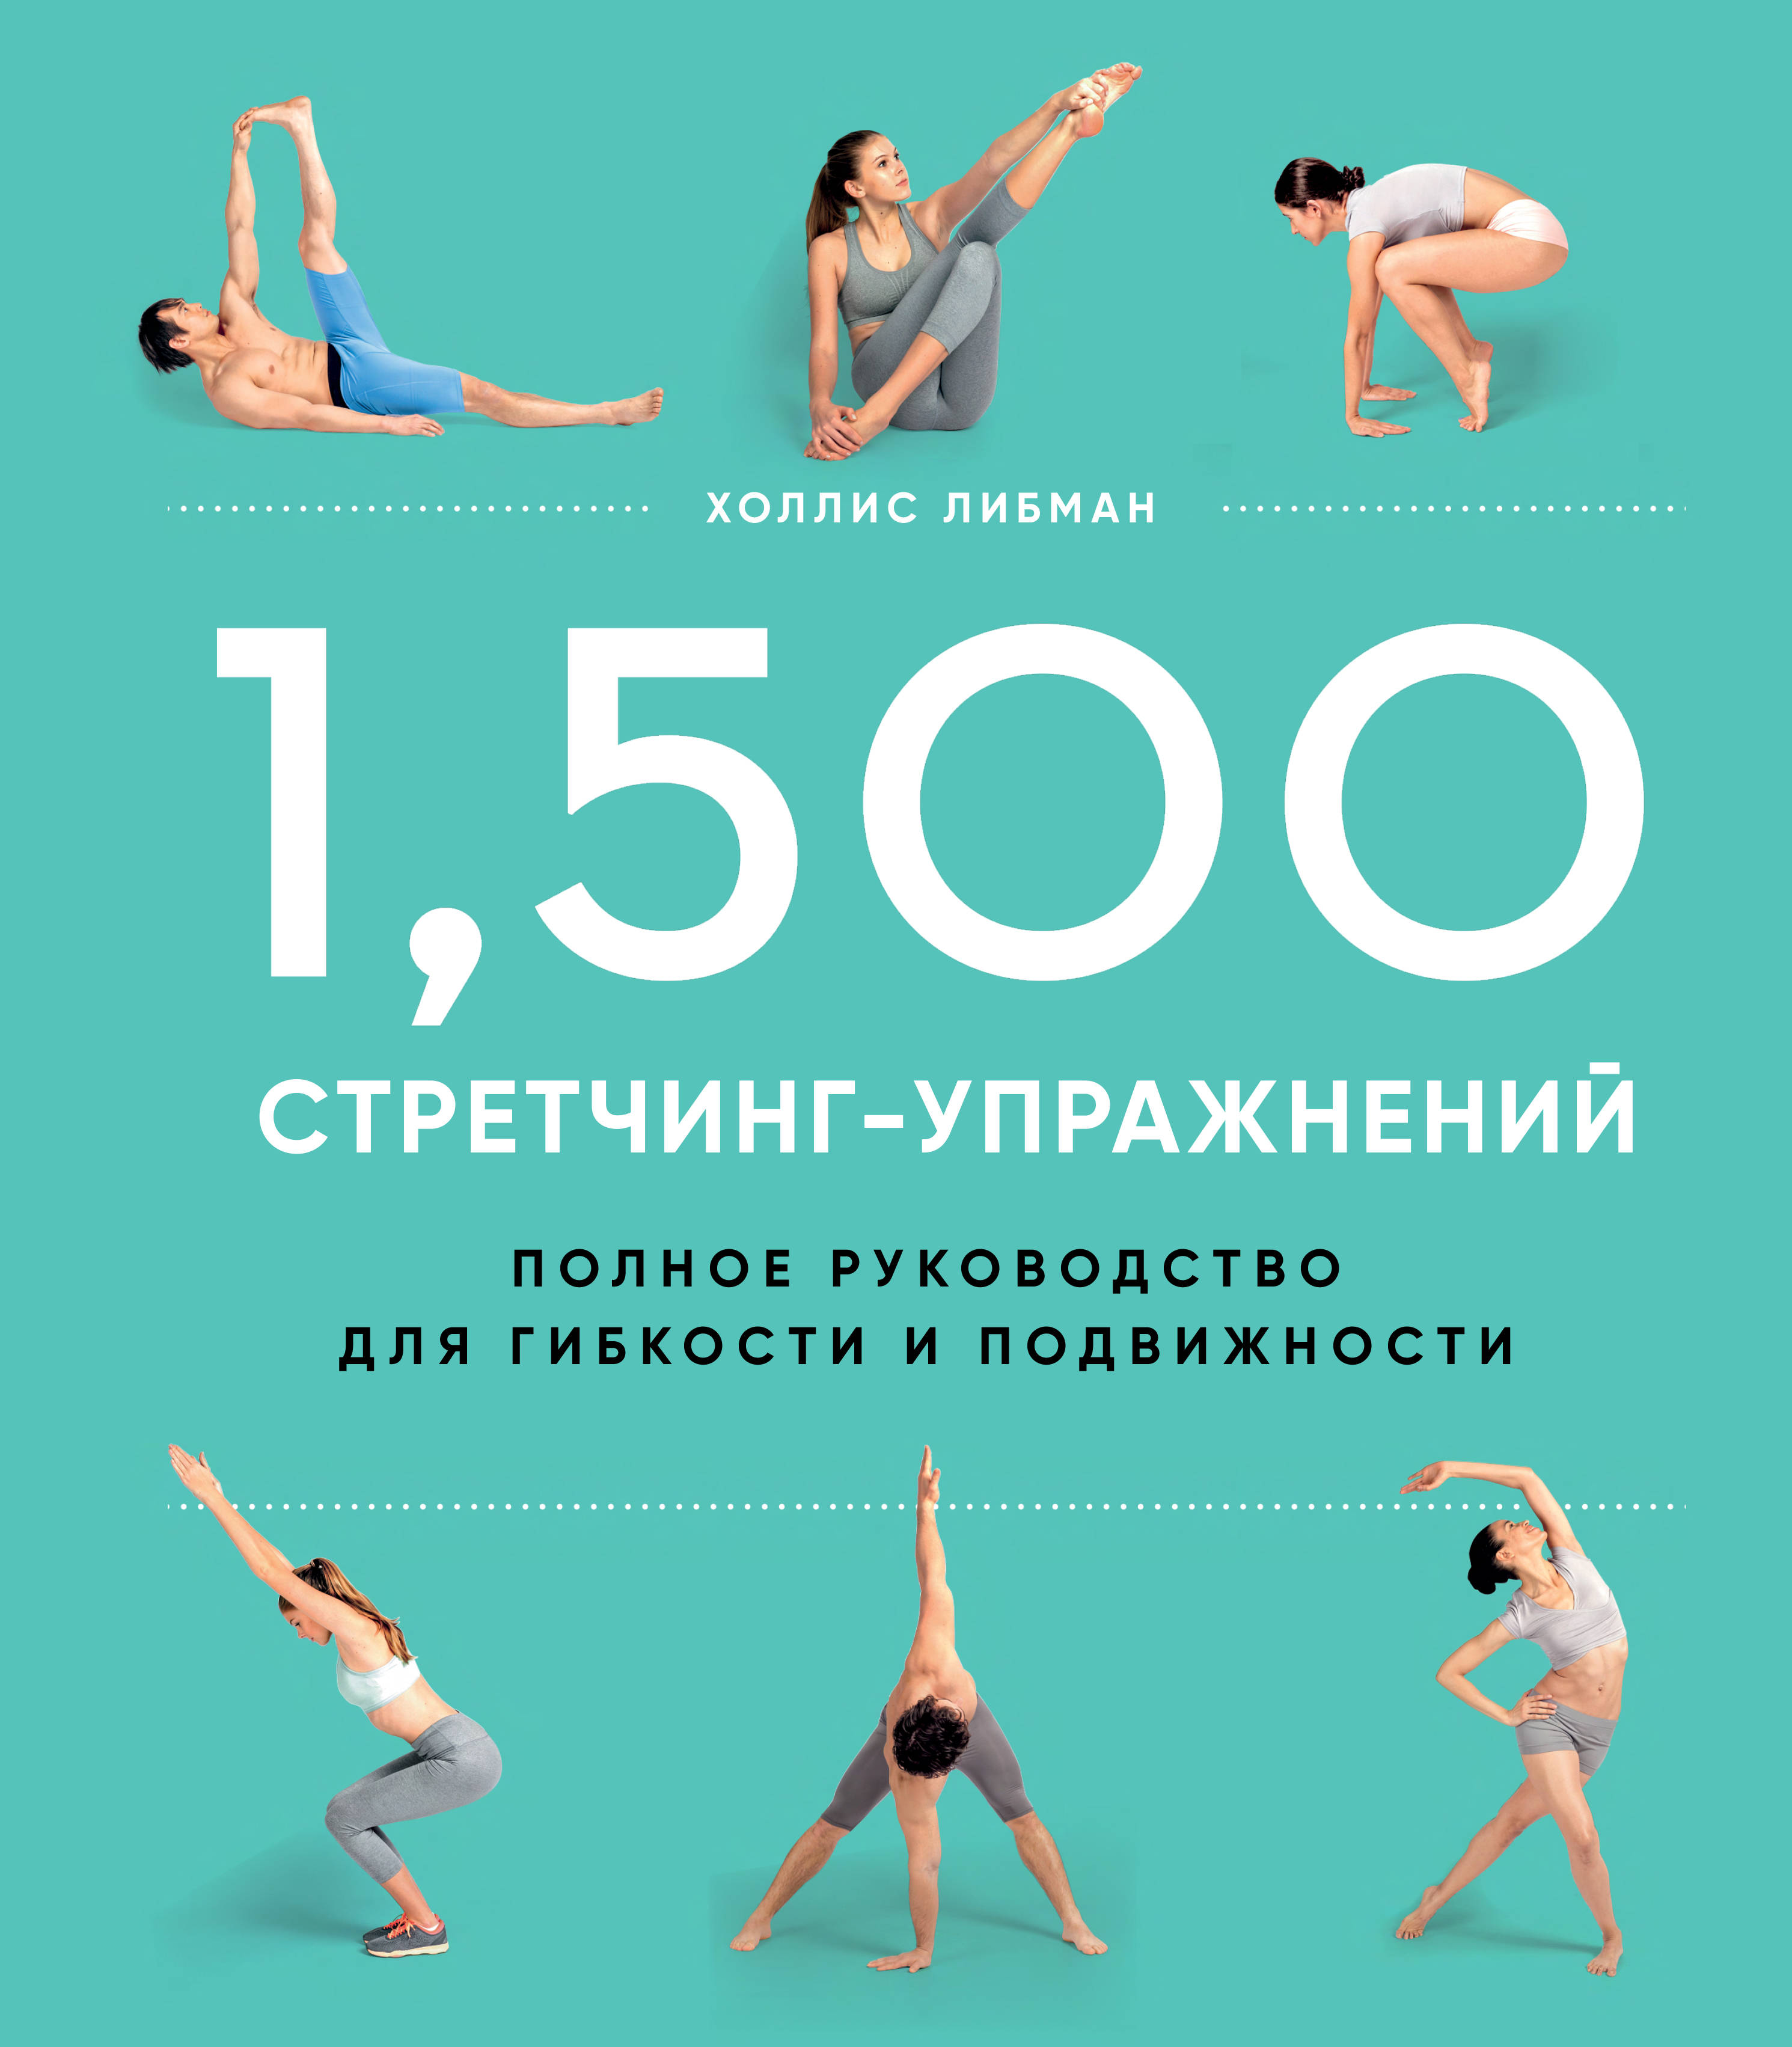 Либман Х.Л. 1,500 стретчинг-упражнений: энциклопедия гибкости и движения 